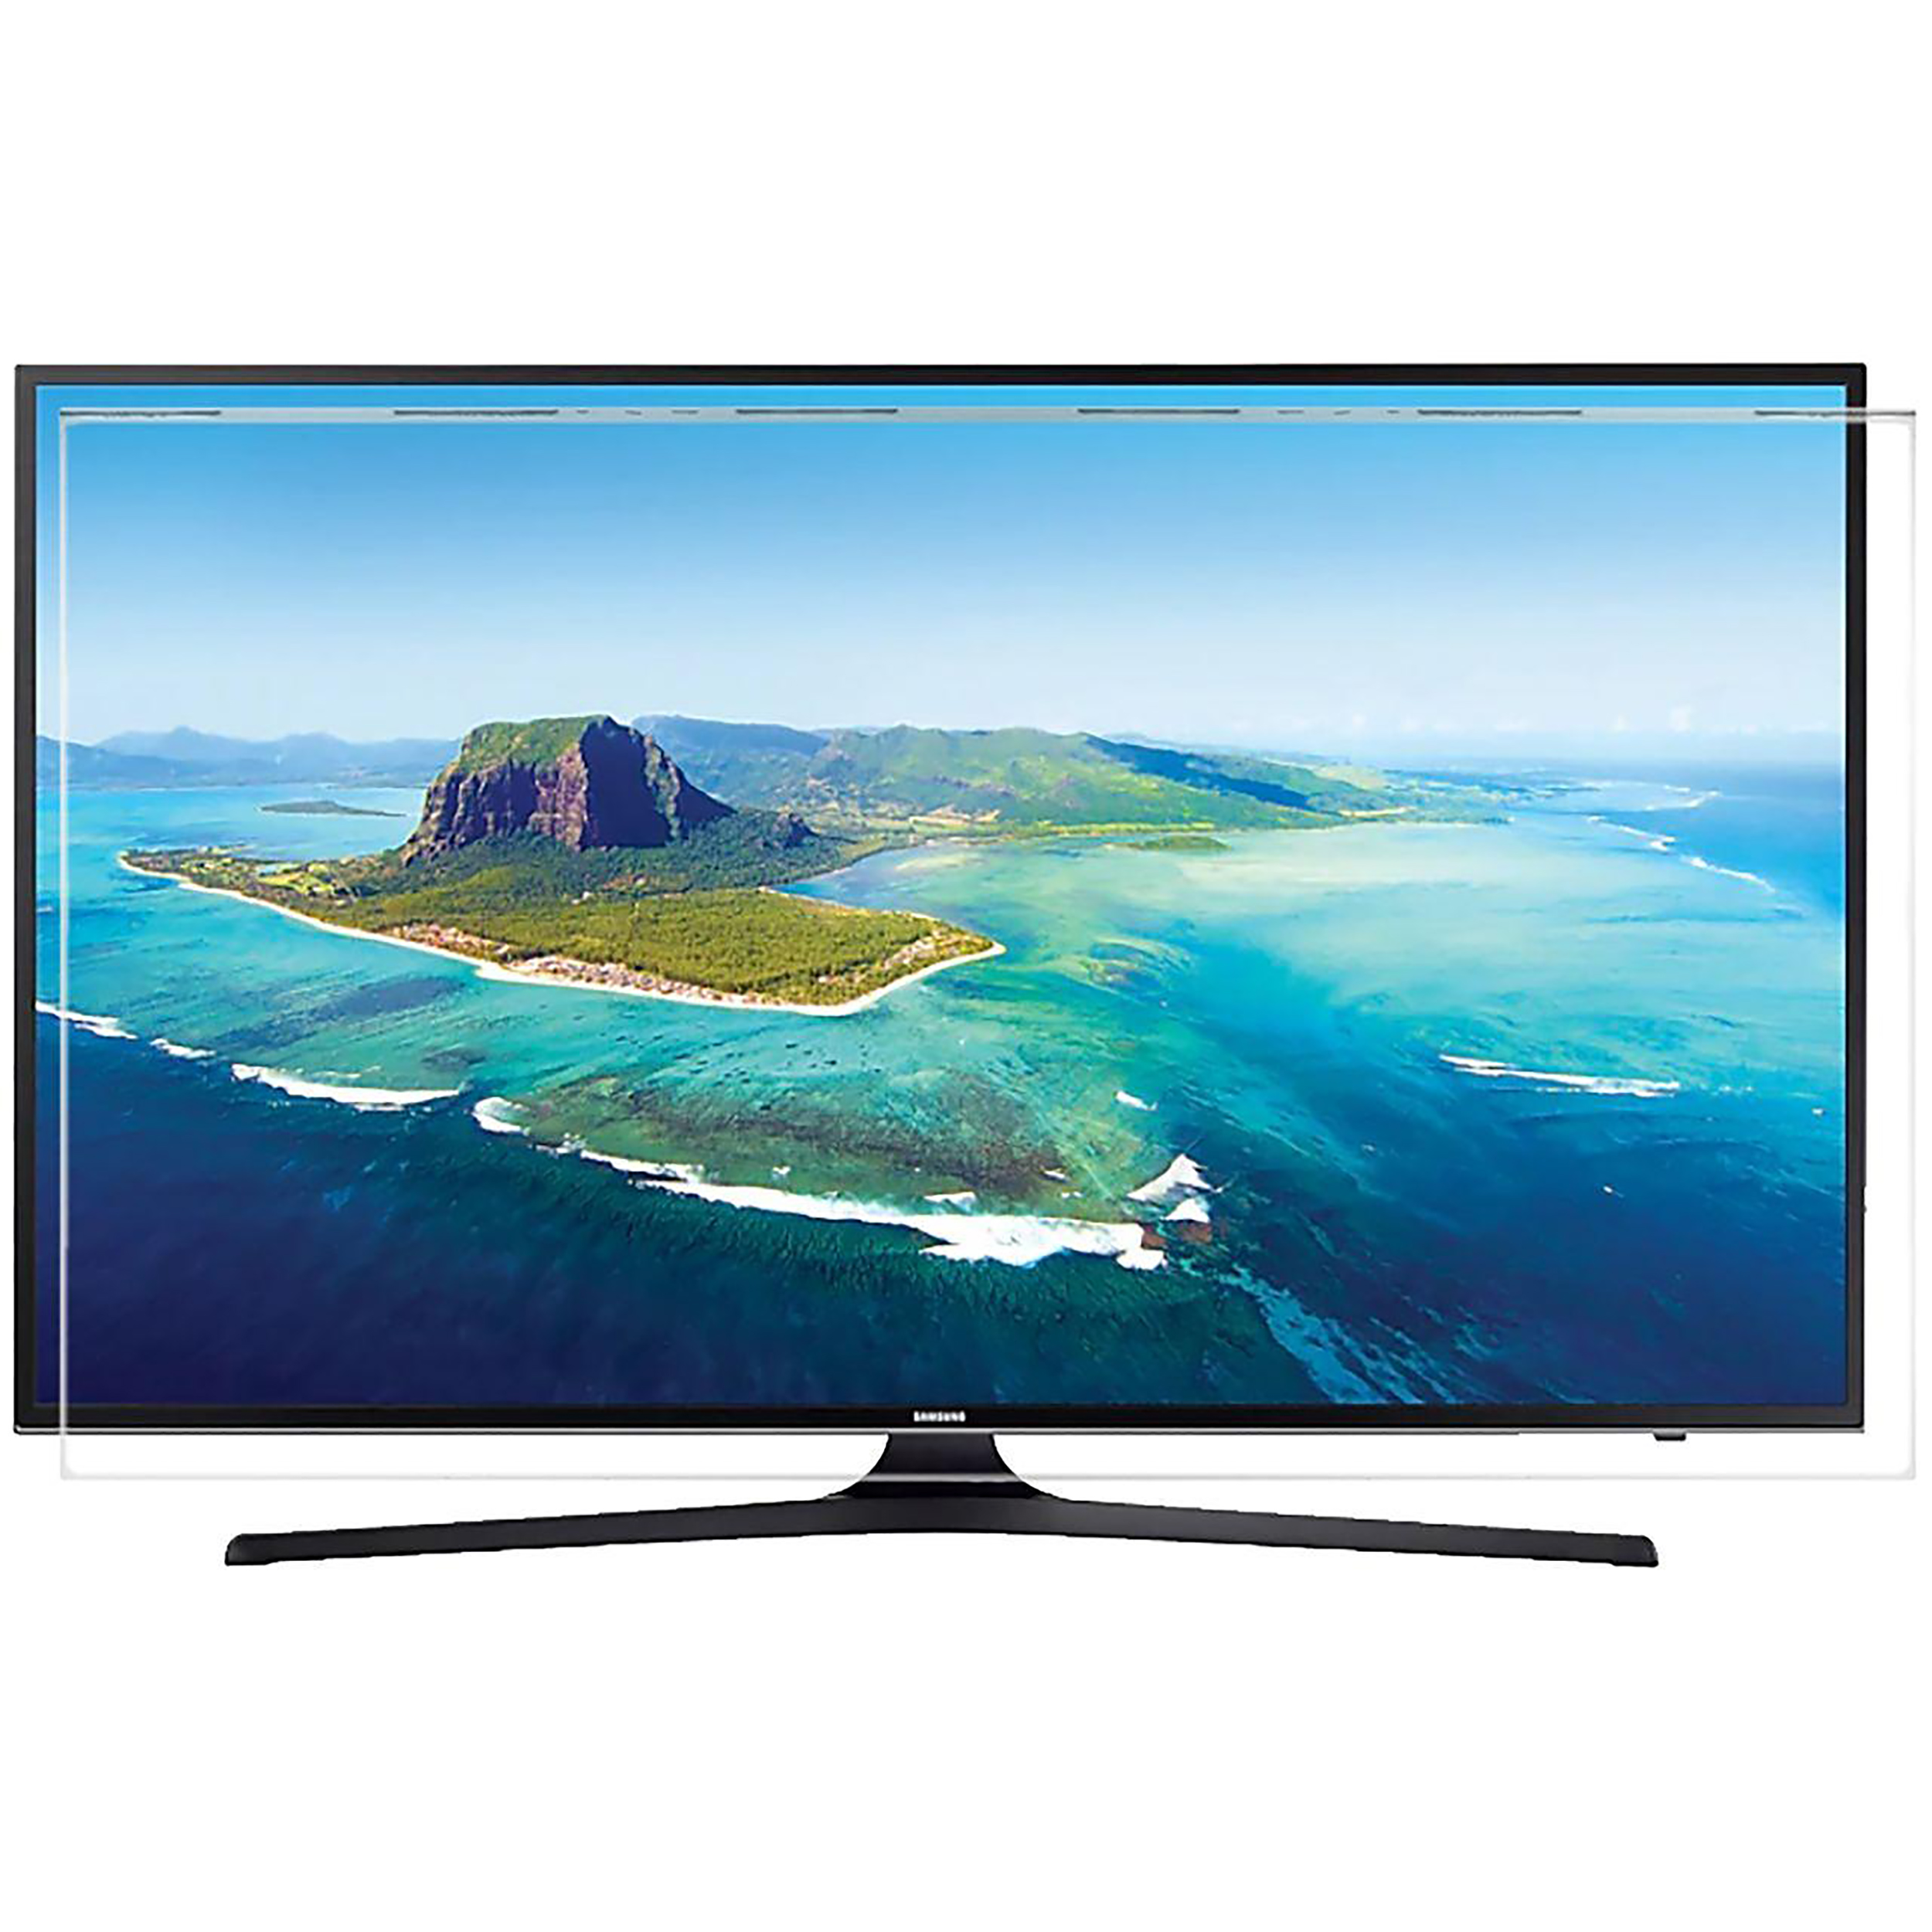  محافظ صفحه نمایش تلویزیون مدل SP-32 مناسب برای تلویزیون 32 اینچی